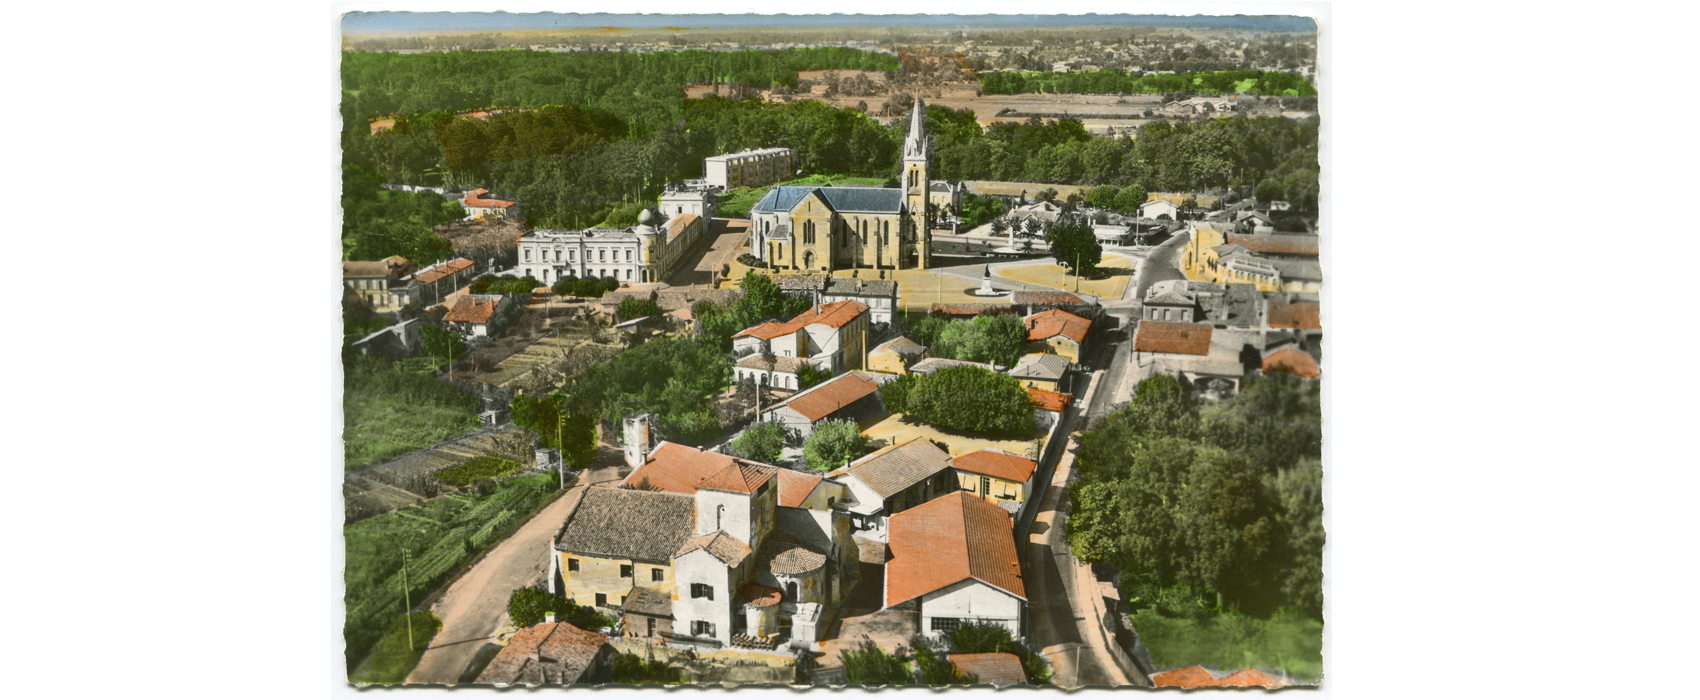 Le centre-ville de Mérignac au milieu des années 1950 